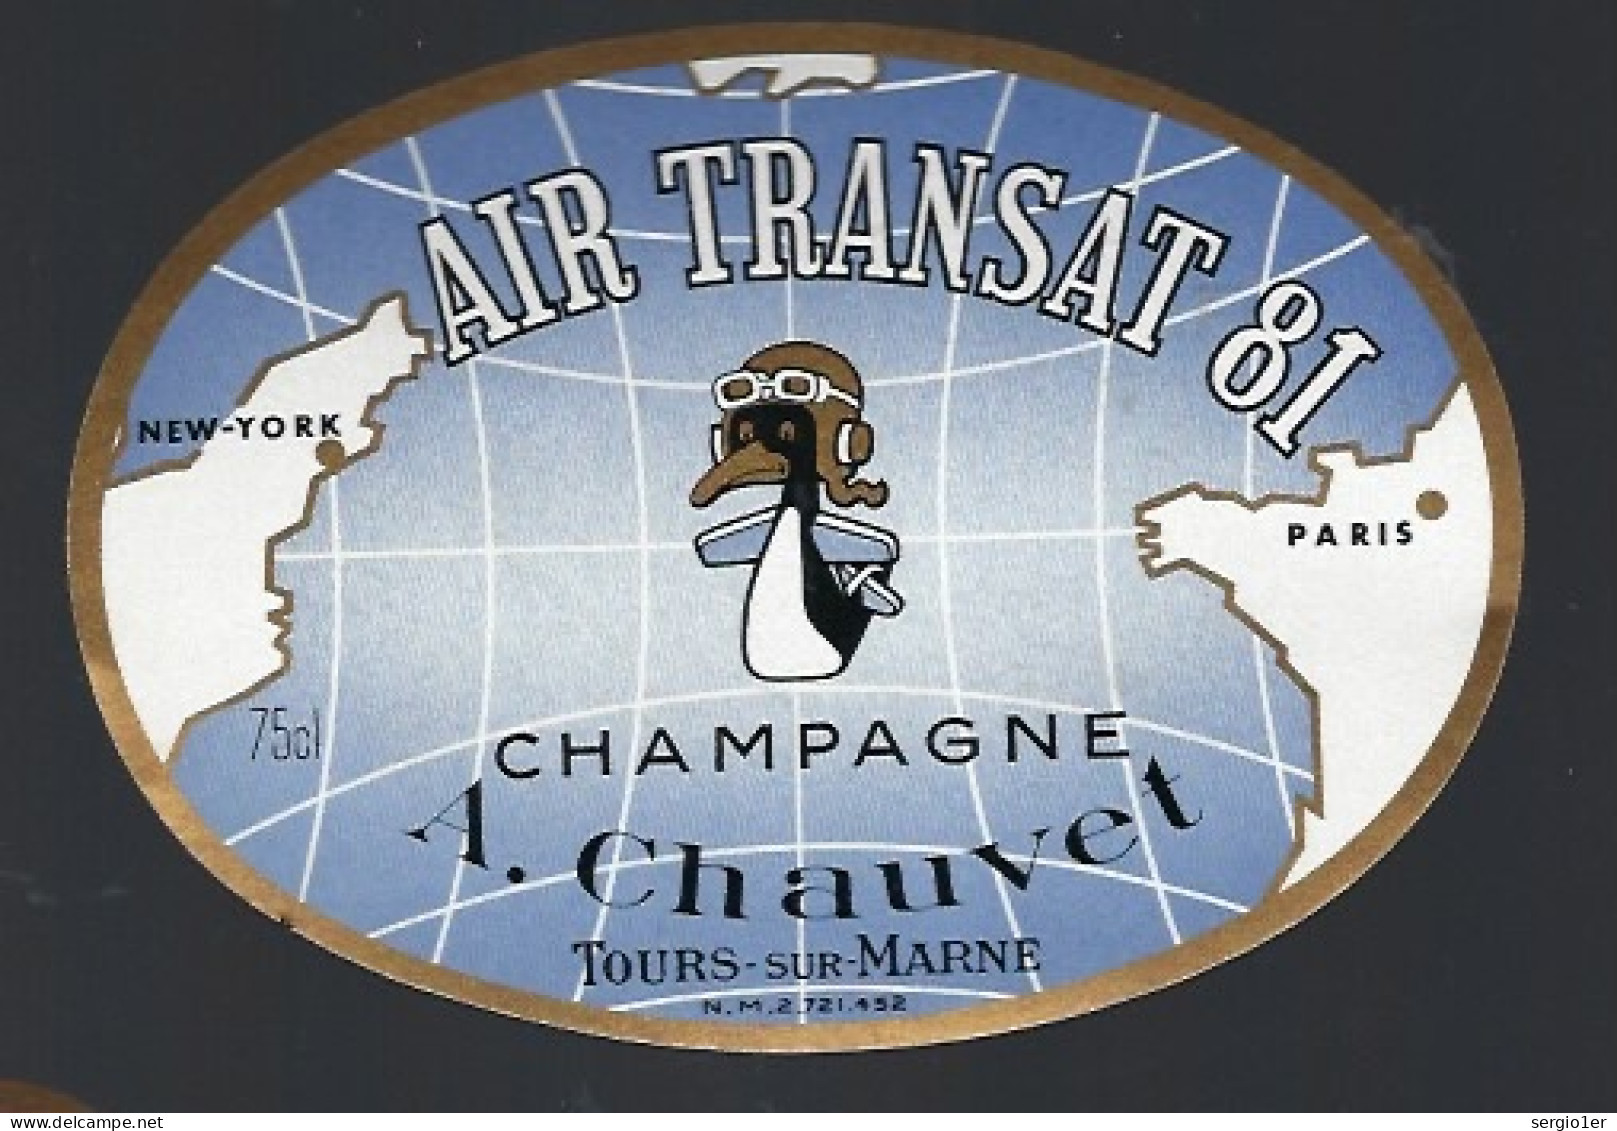 Rare Etiquette Champagne Cuvée Air Transat 81  A Chauvet Tours Sur Marne Marne 51" New York-Paris" Canard Aviation - Champagner